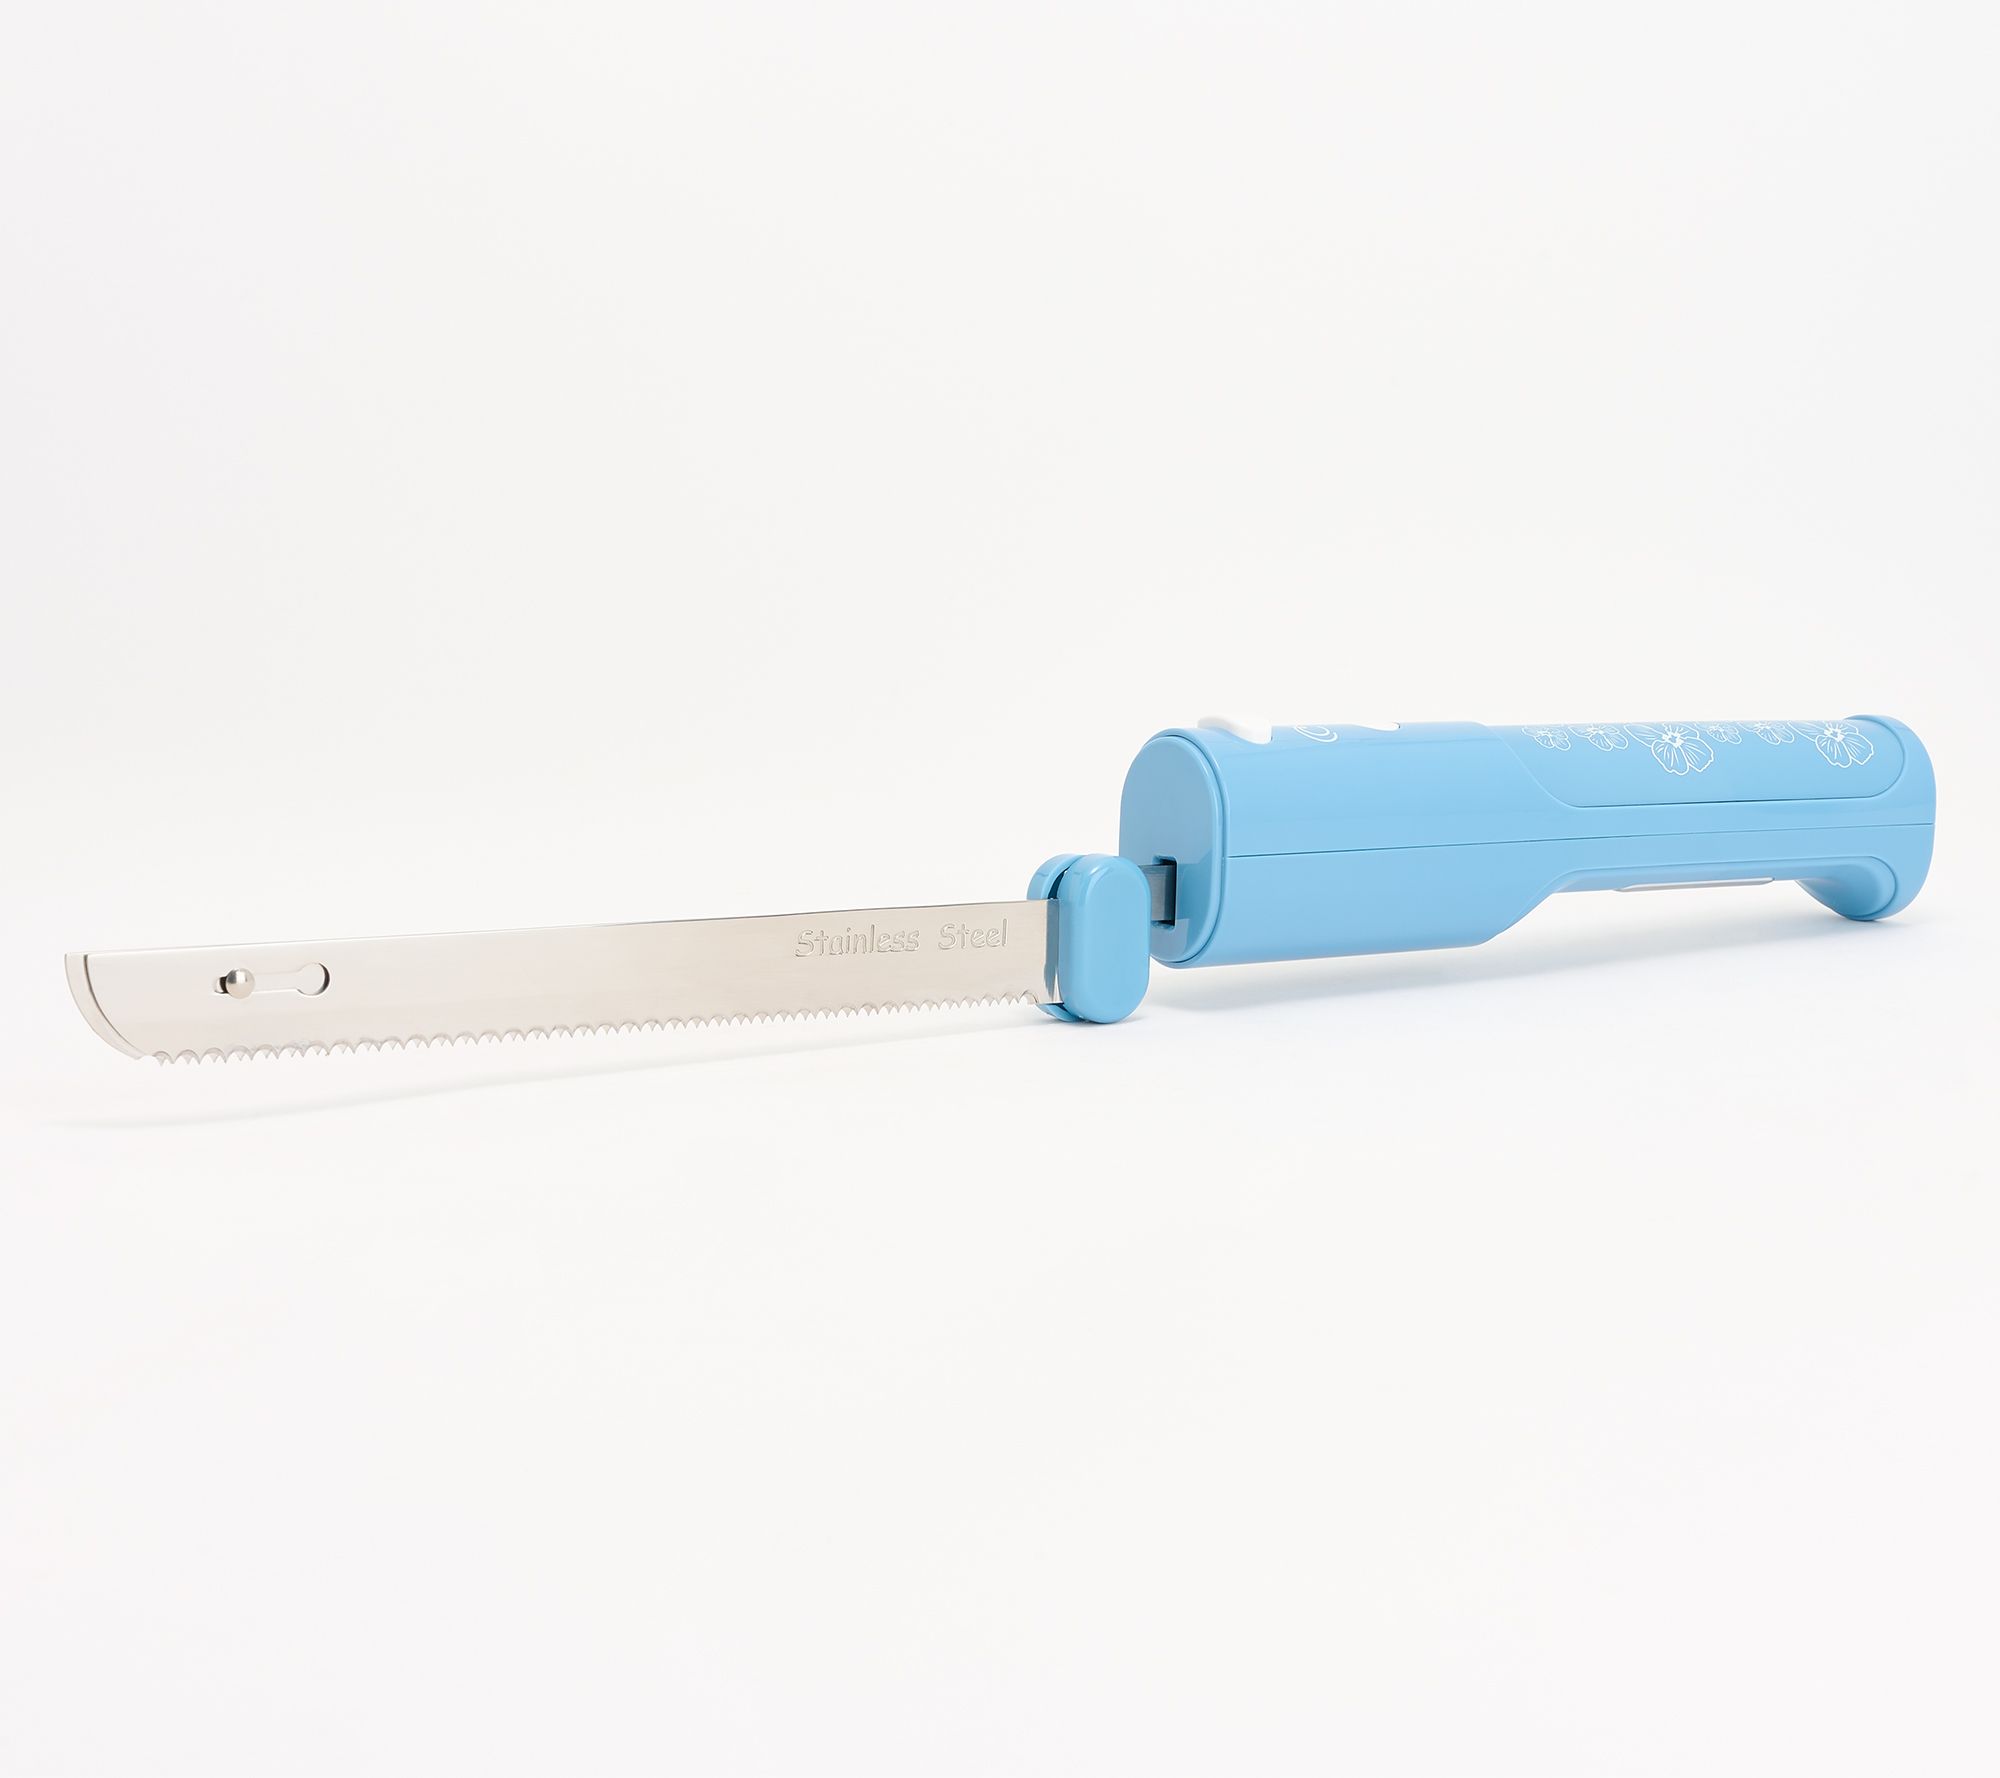 Brentwood Electric Knife Sharpener : Target